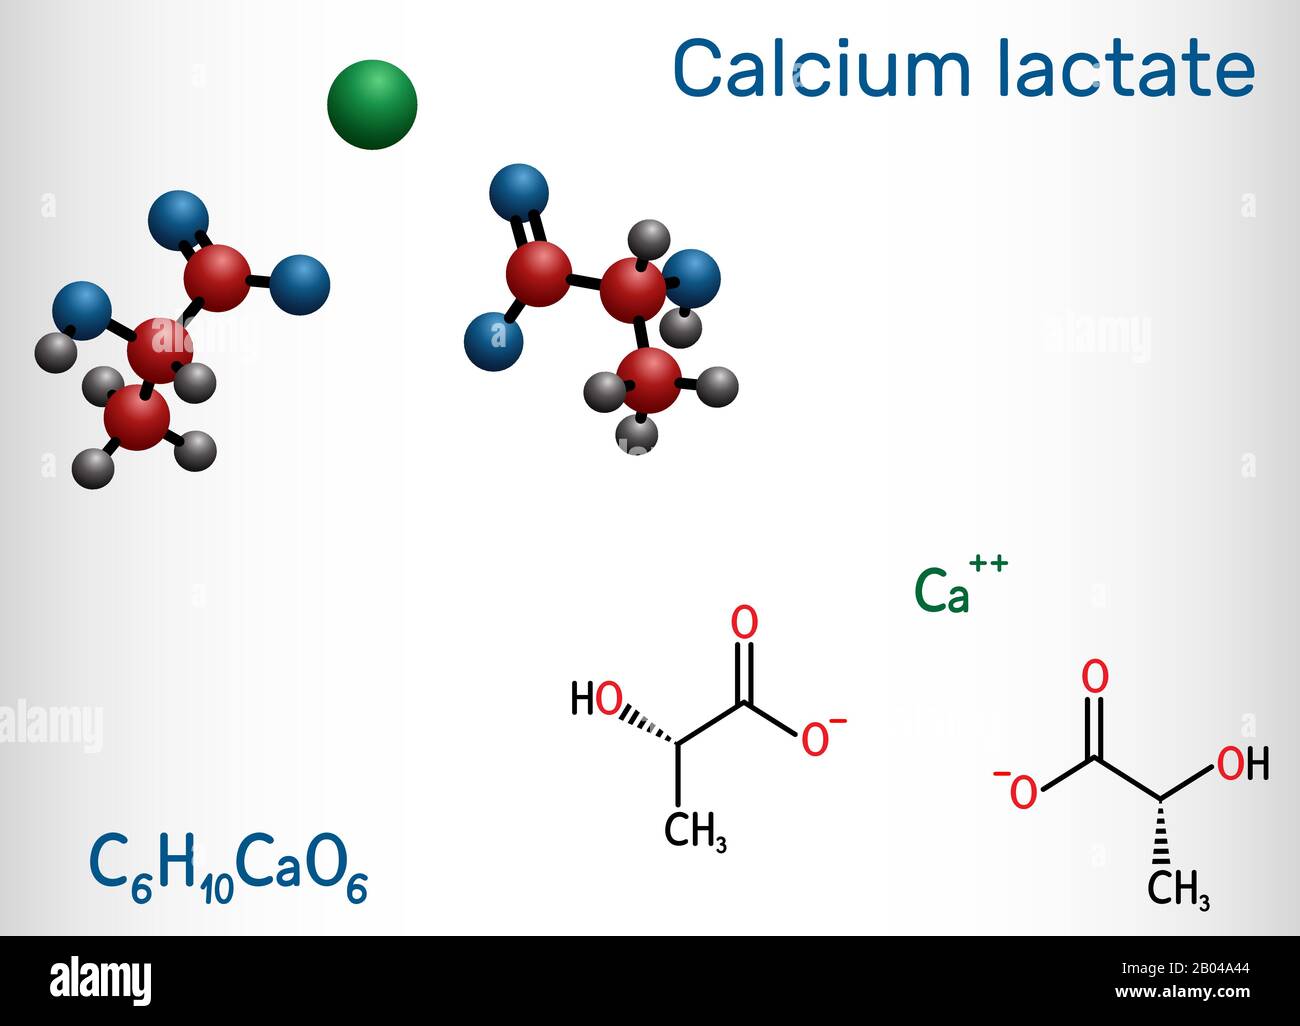 Lattato di calcio, C6H10CaO6, molecola di anione lattato. Viene usato in medicina per trattare le carenze di calcio e come additivo alimentare E327. chemica strutturale Illustrazione Vettoriale